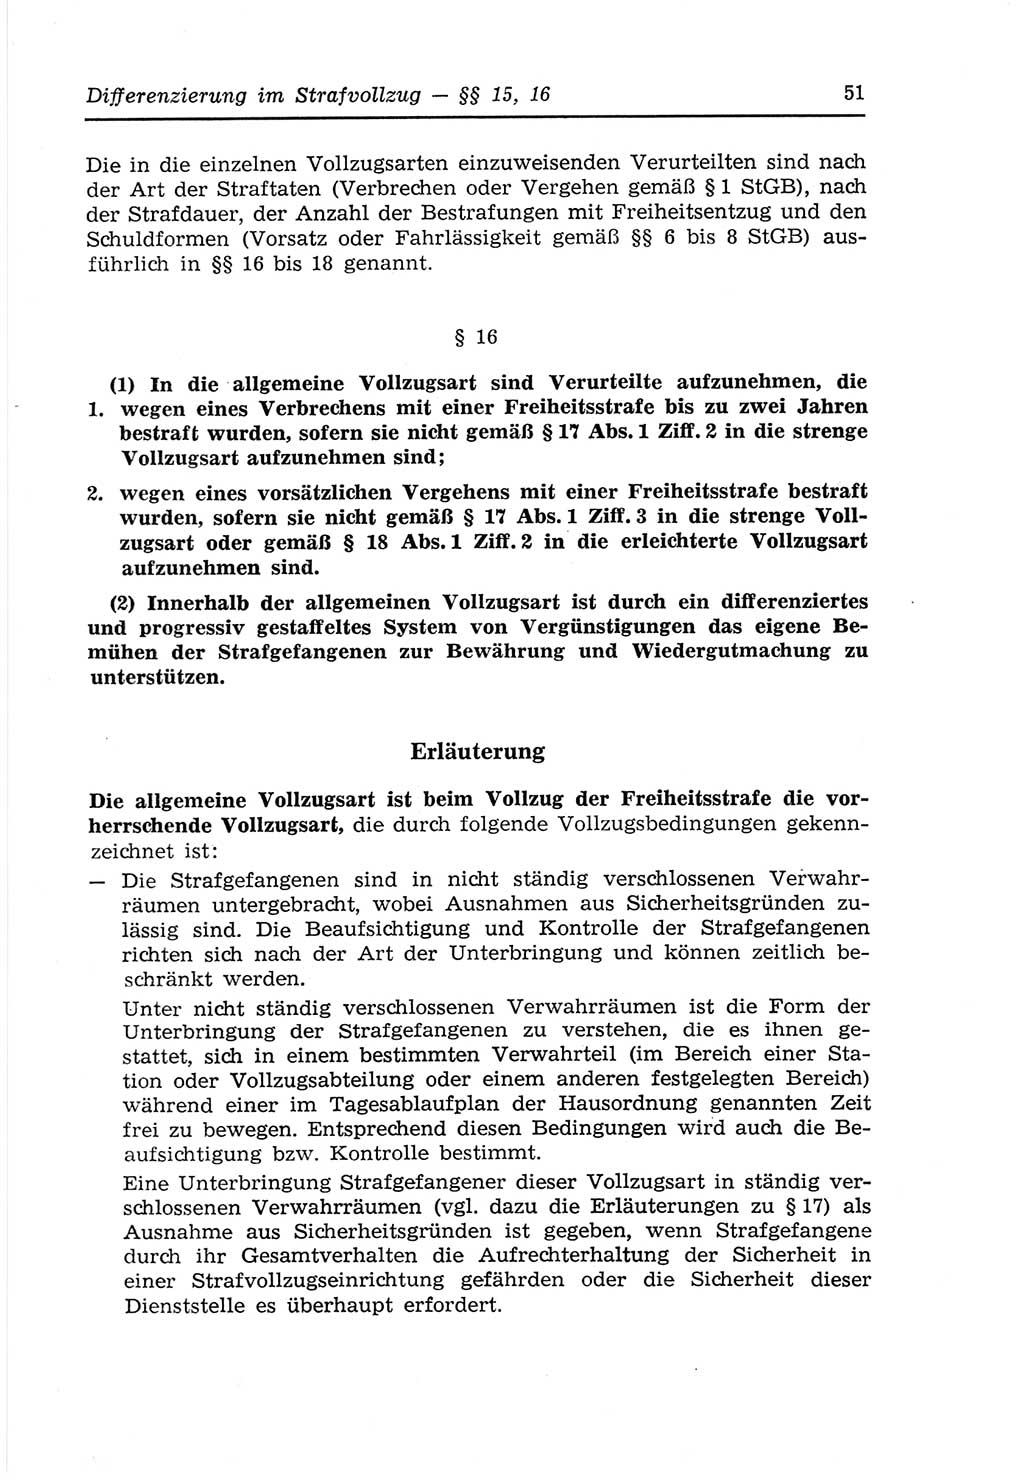 Strafvollzugs- und Wiedereingliederungsgesetz (SVWG) der Deutschen Demokratischen Republik (DDR) 1968, Seite 51 (SVWG DDR 1968, S. 51)